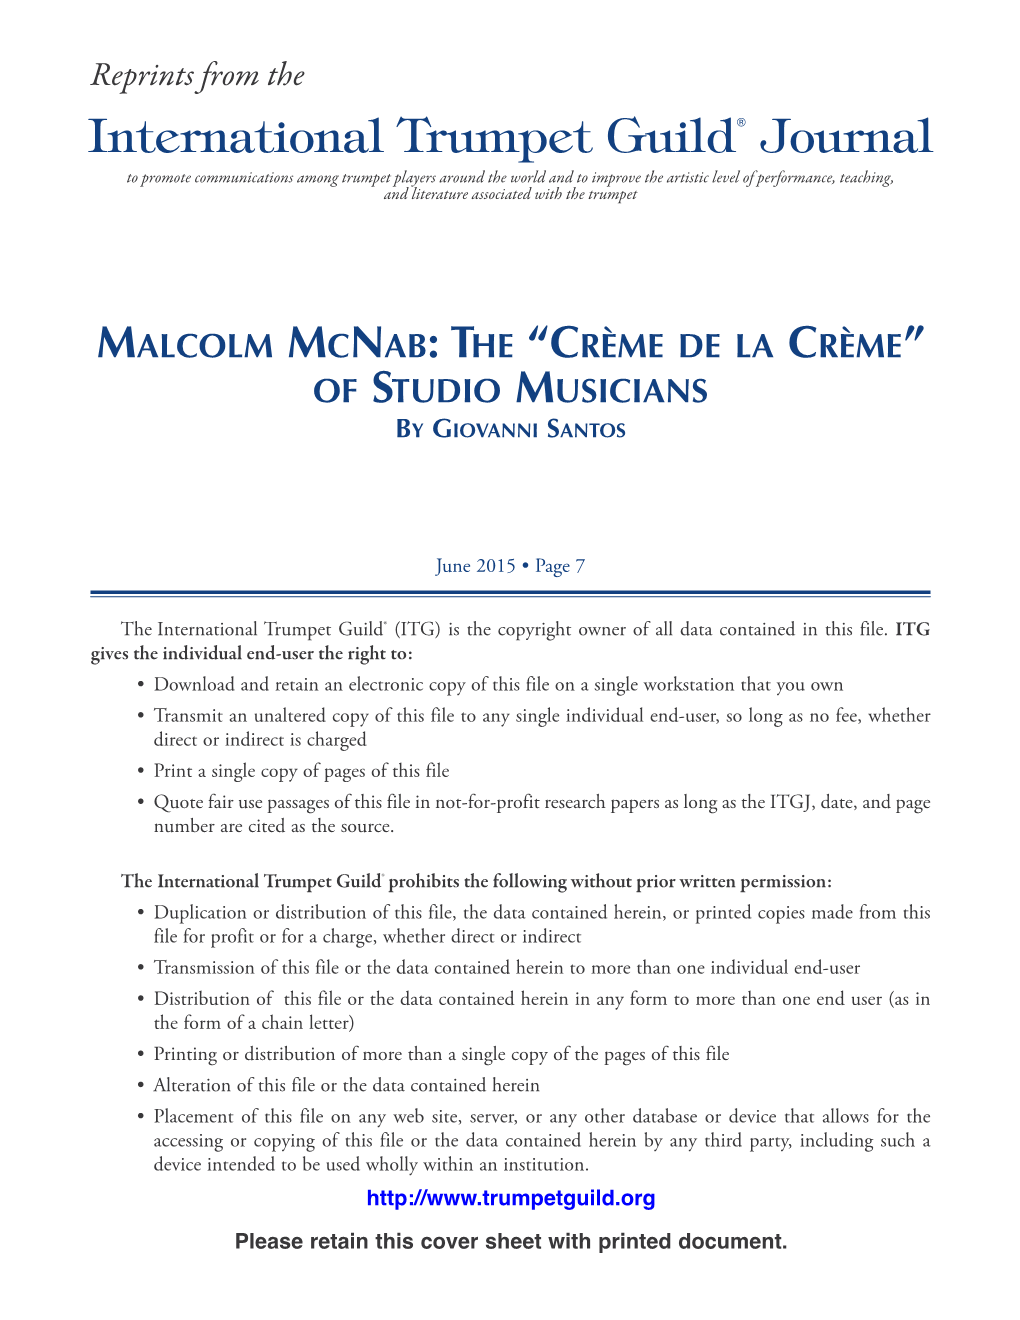 Malcolm Mcnab : the “Crème De La Crème ” of Studio Musicians by Giovanni Santos